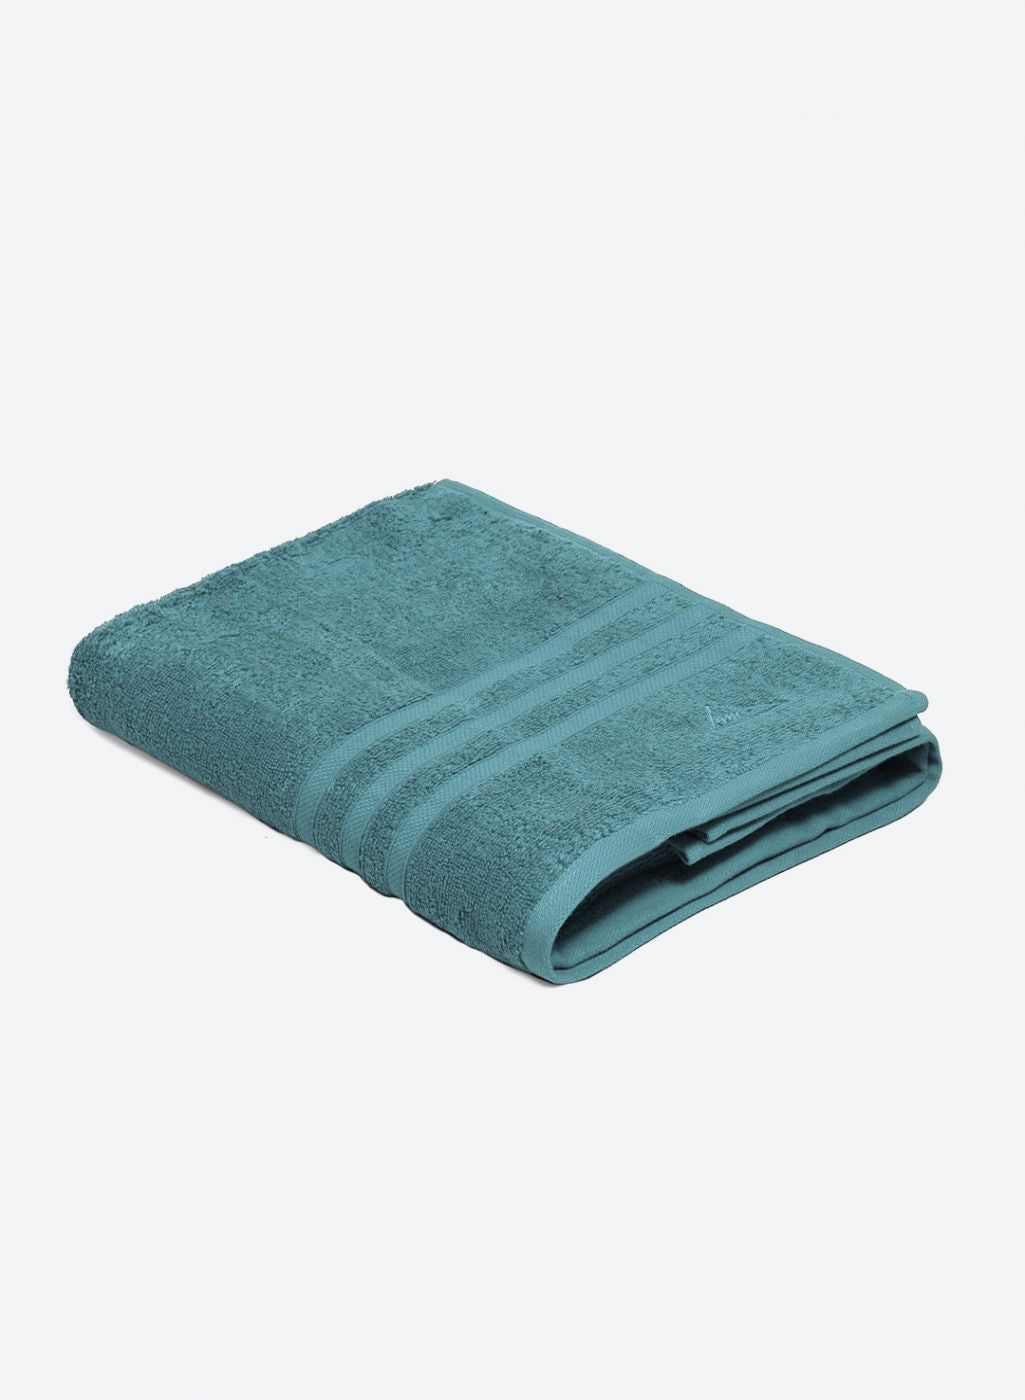 Teal Blue Cotton 525 GSM Bath Towel